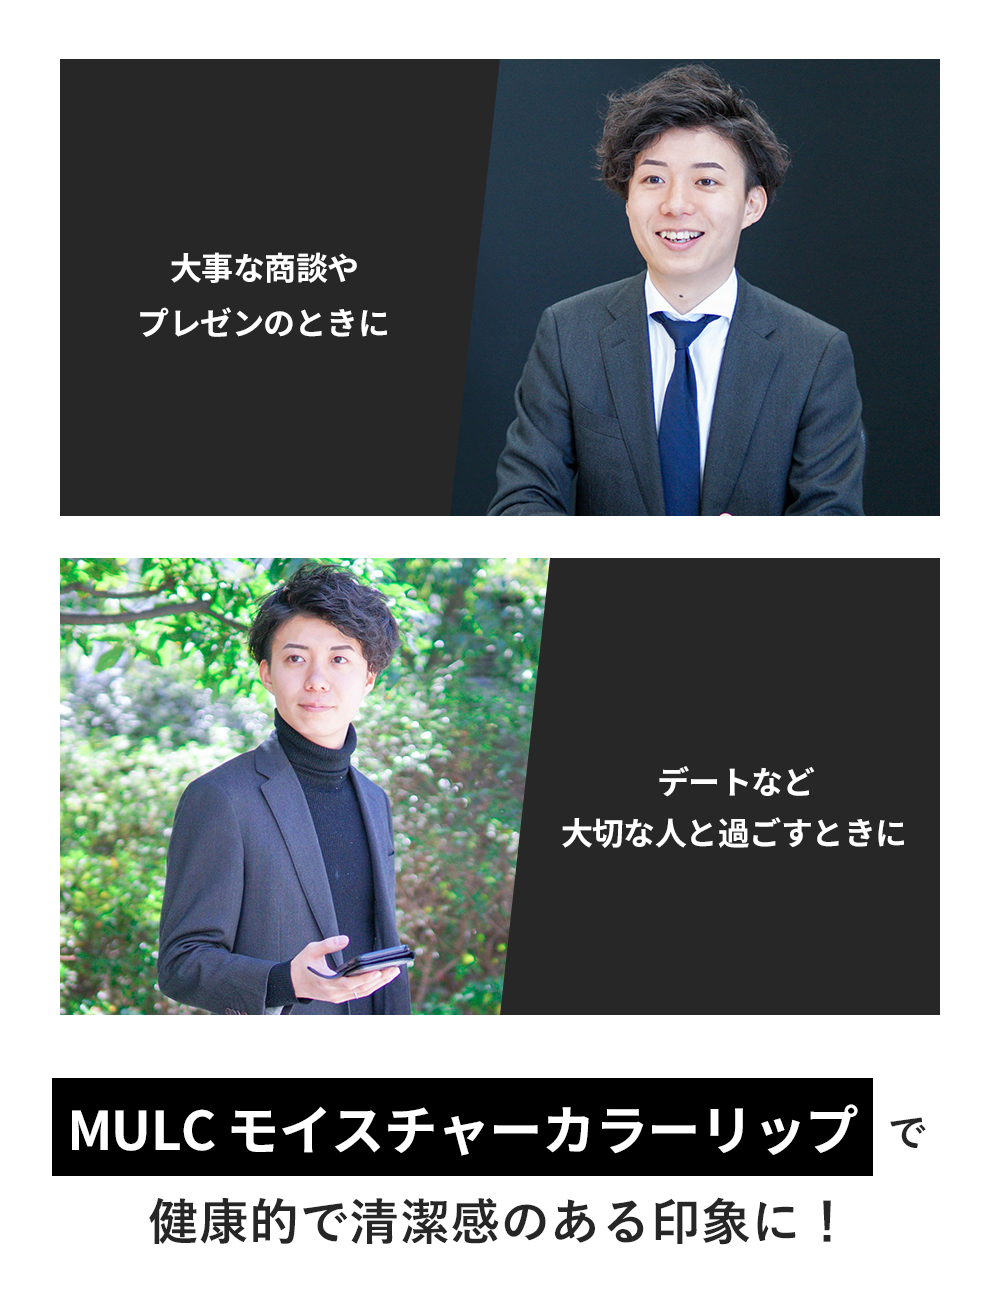 MULC モイスチャーカラーリップ - MULCオンラインショップ